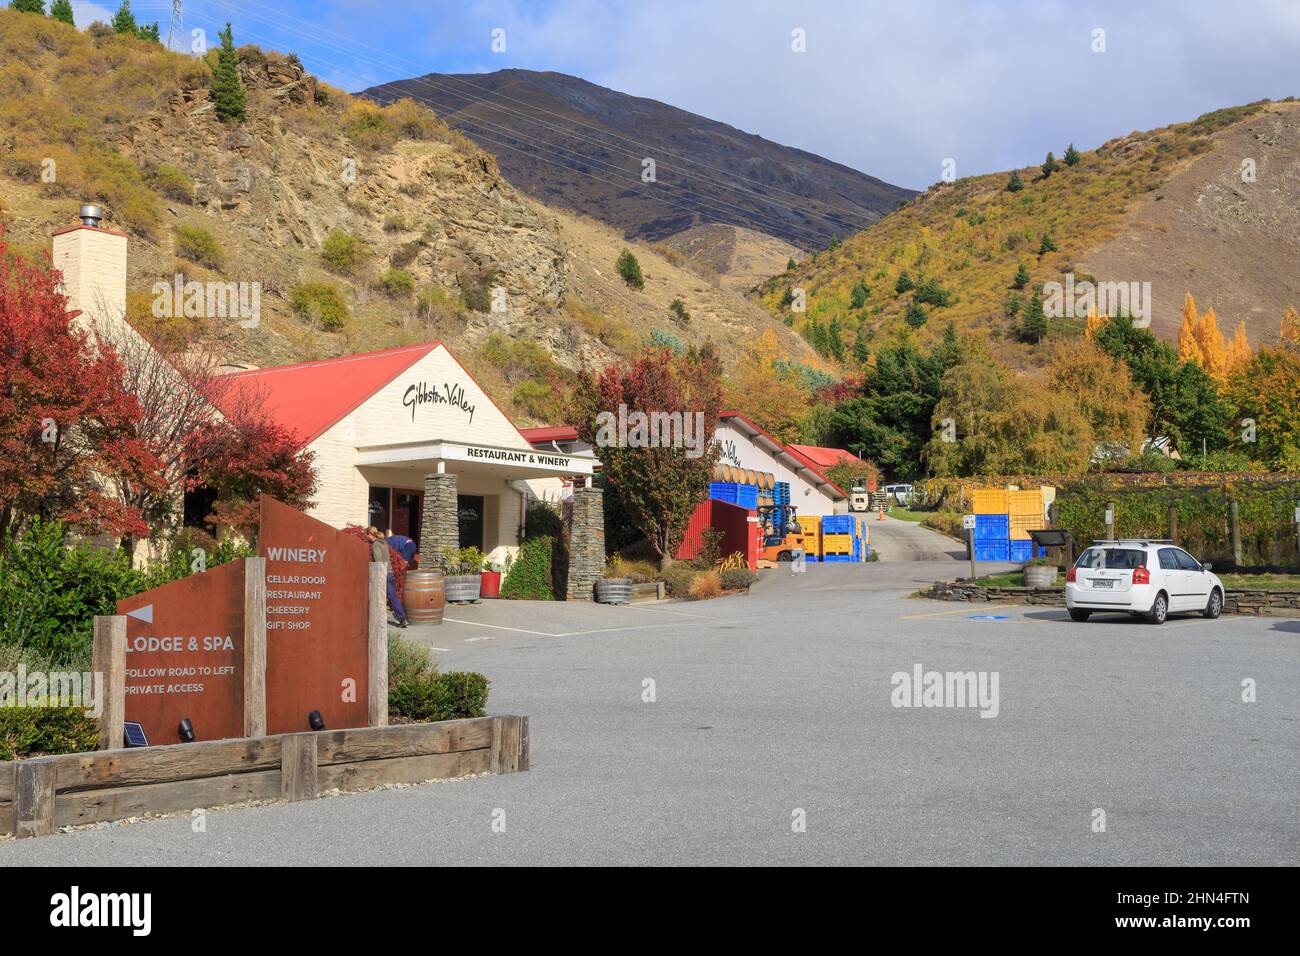 El restaurante y bodega Gibbston Valley en la región de Otago, Nueva Zelanda Foto de stock